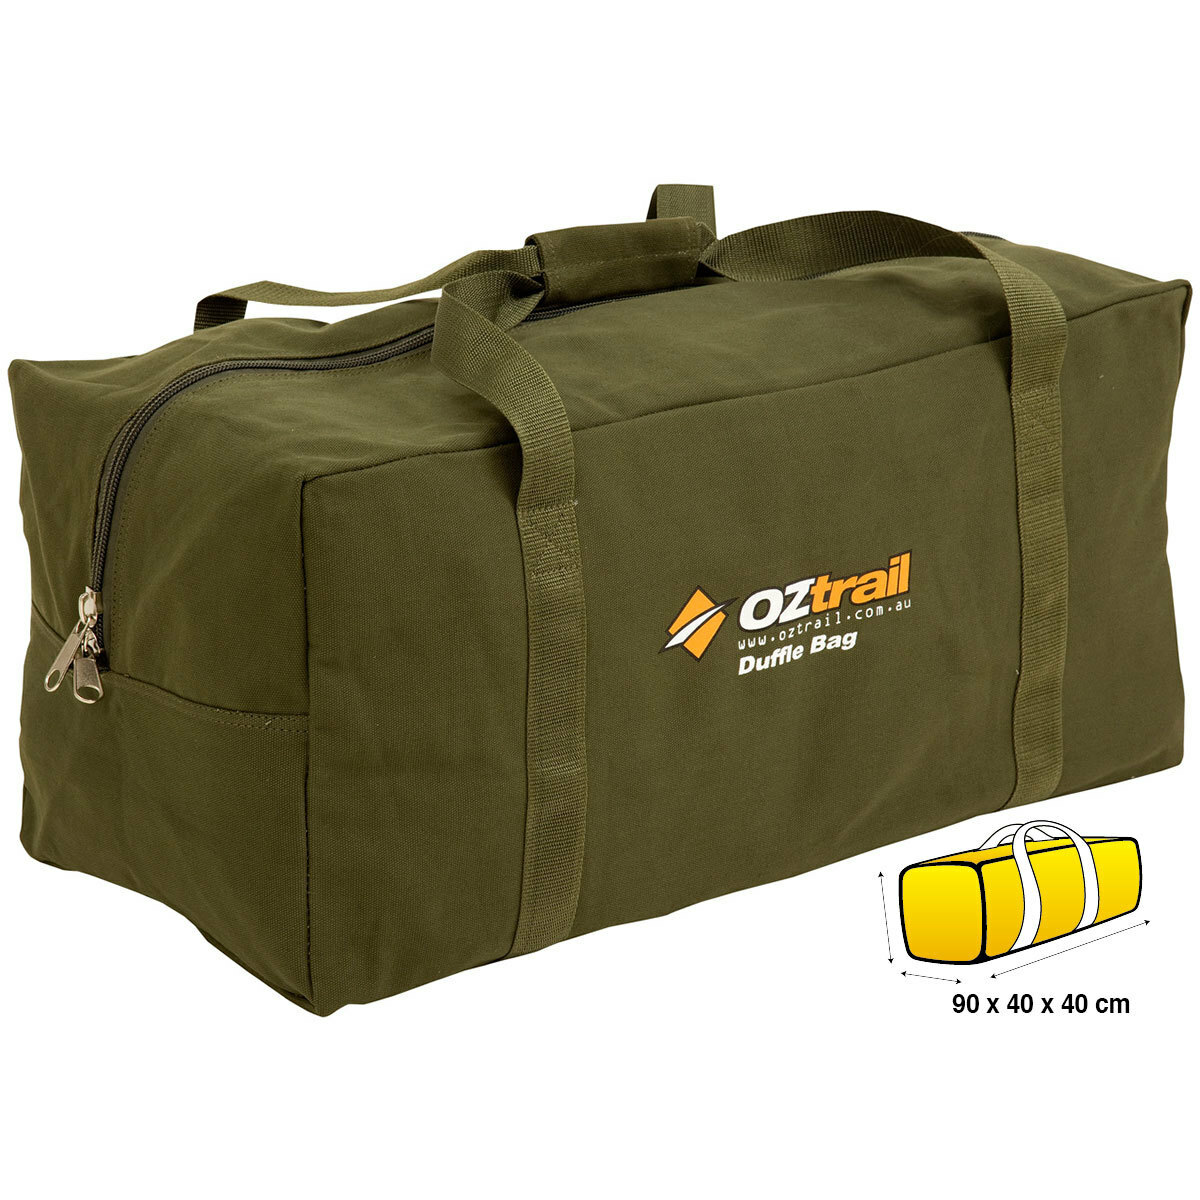 OZtrail Canvas Extra Large Duffle Bag Luggage XL 9320531024841 | eBay